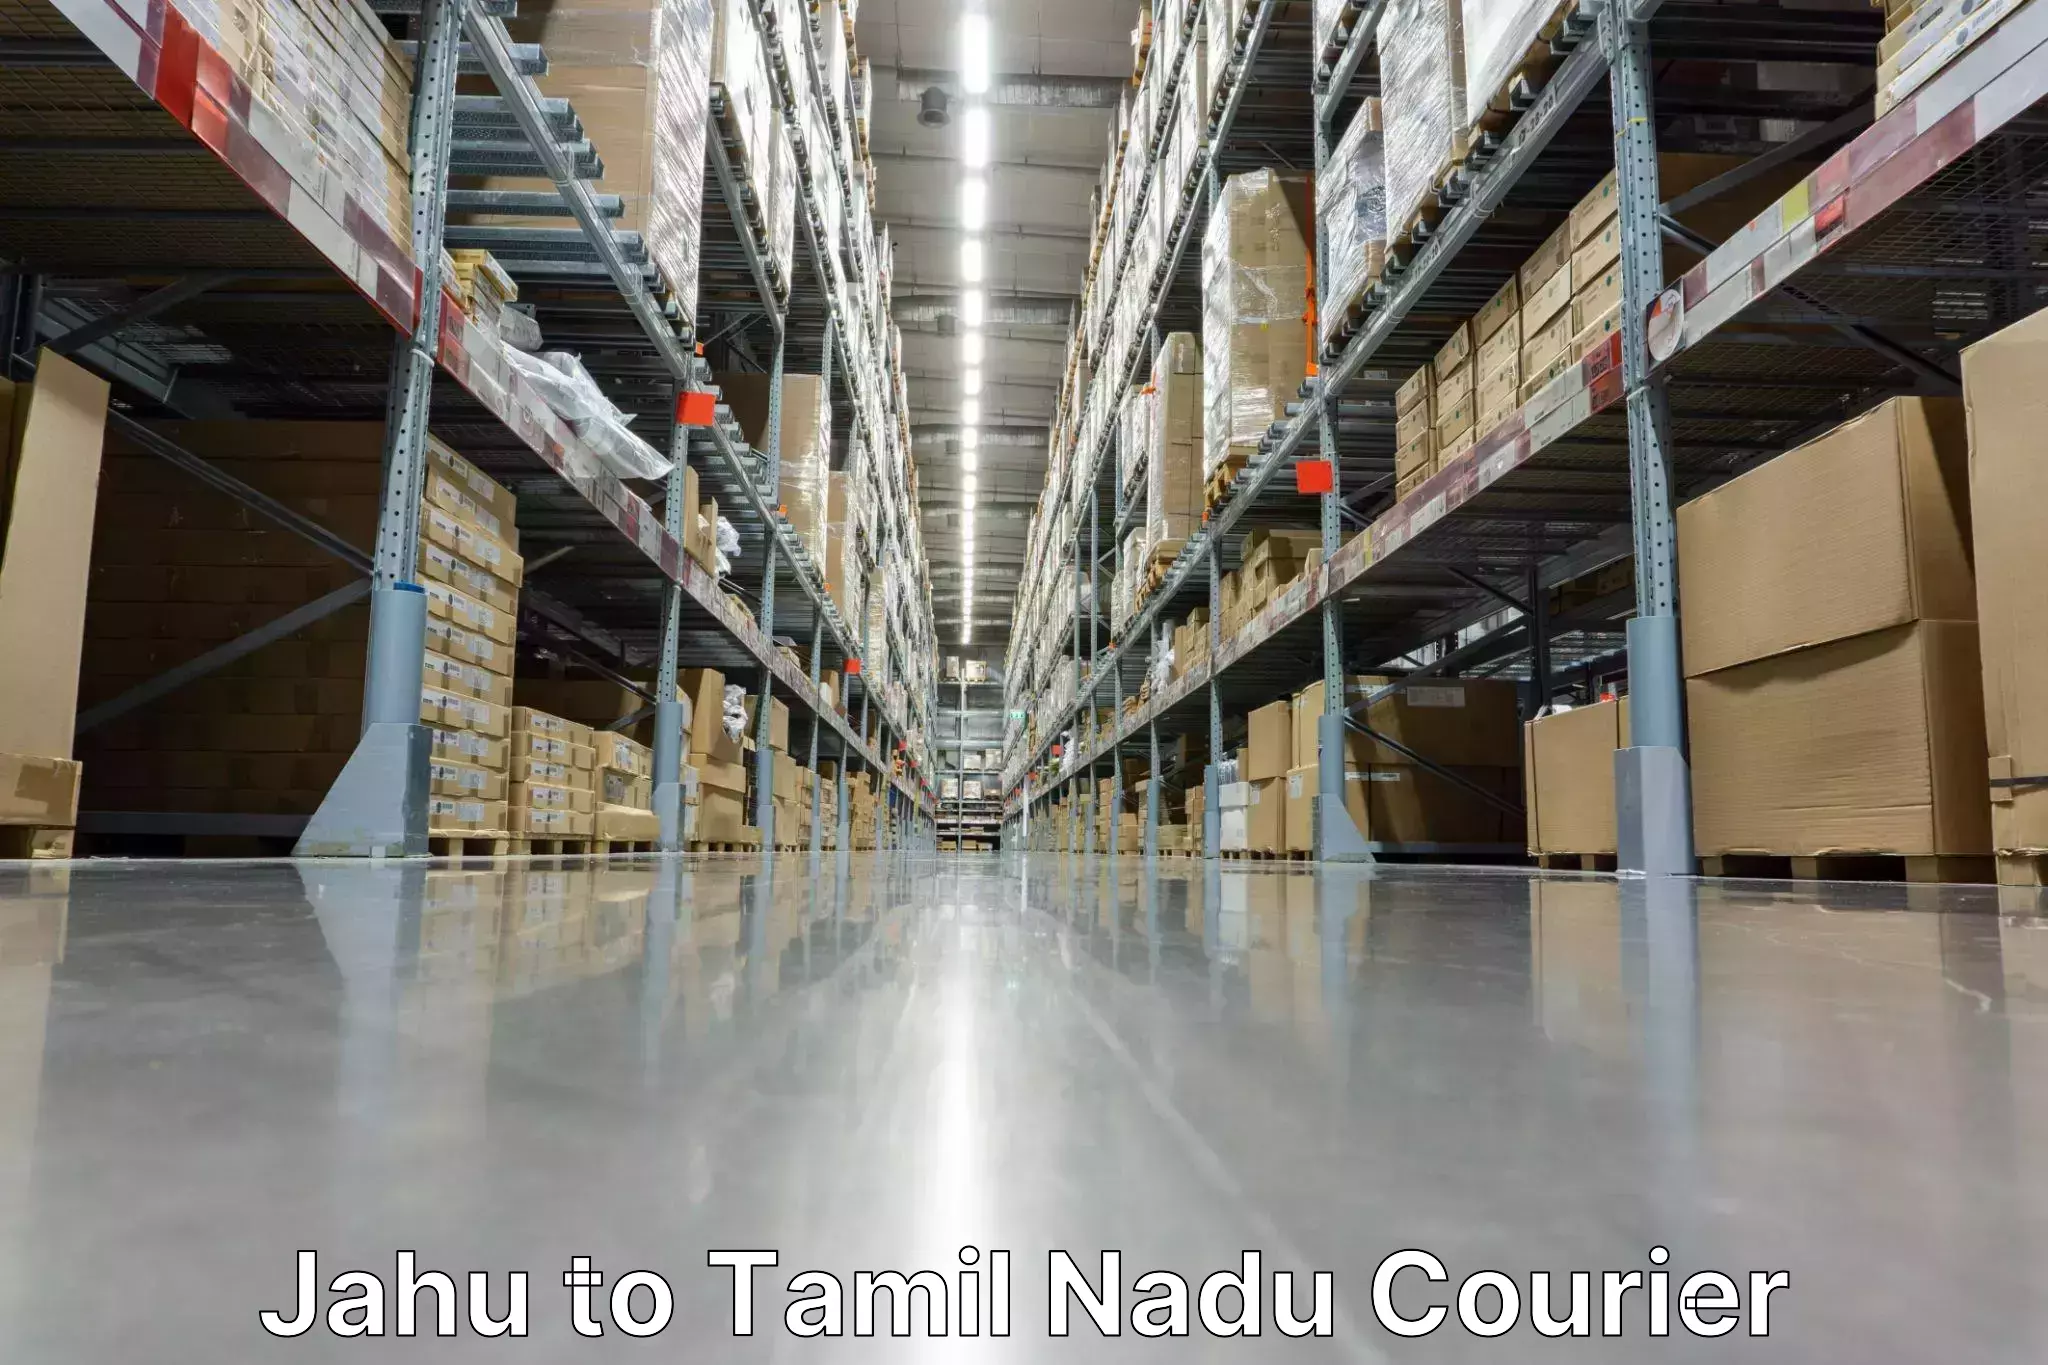 Speedy delivery service Jahu to Tamil Nadu